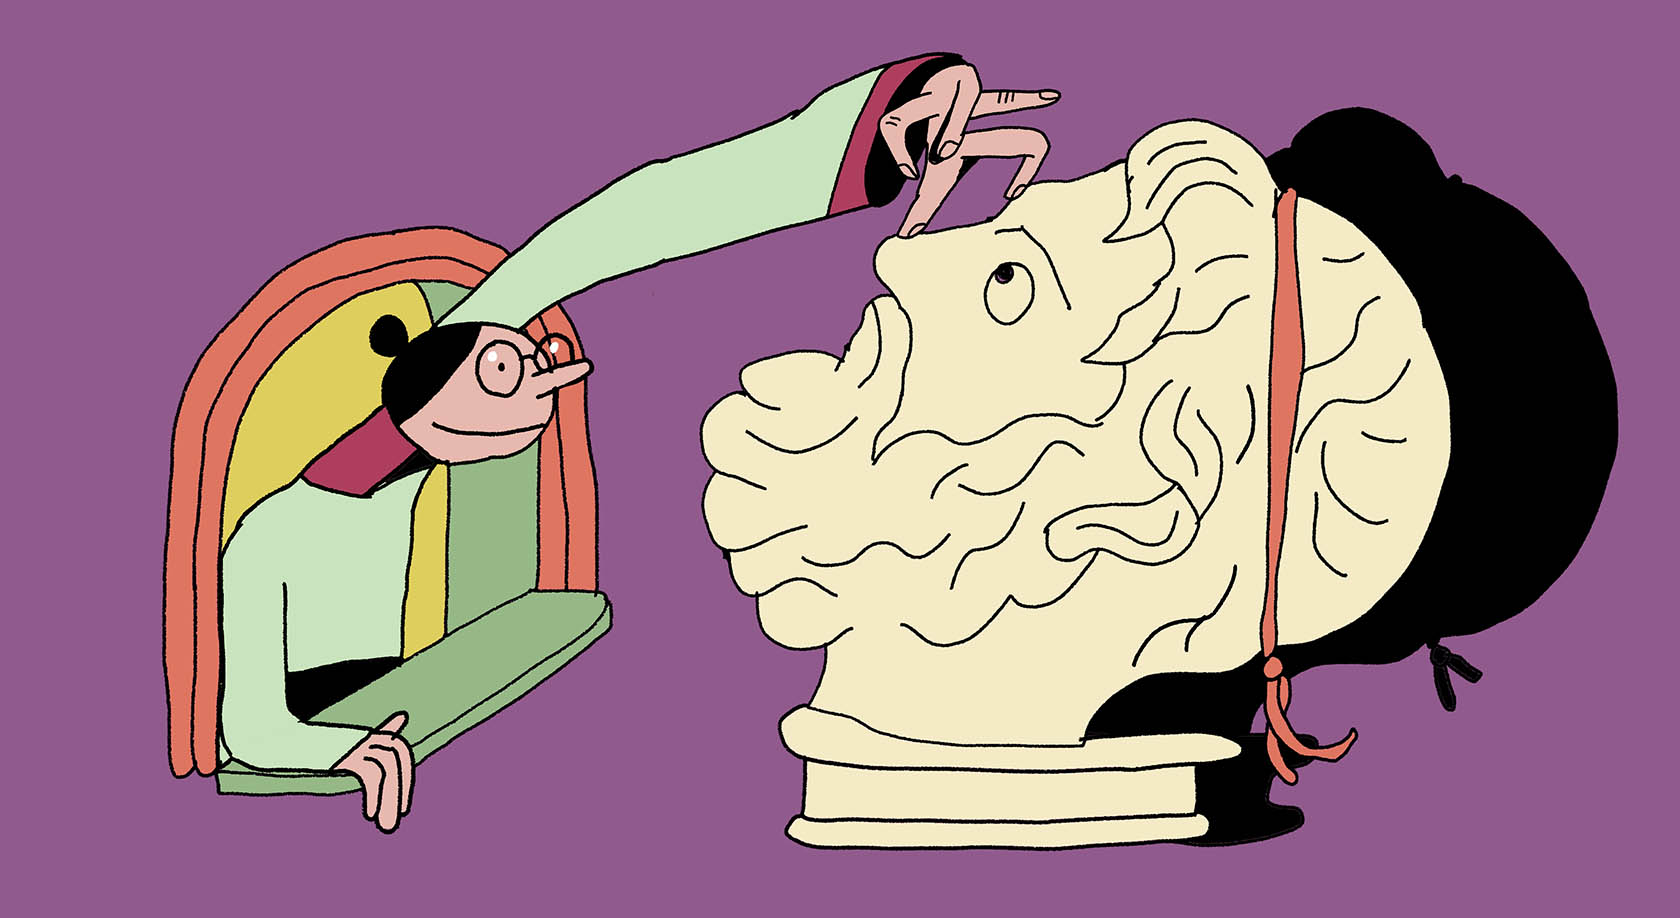 Запятые при ссылках на великие умы: надо ли выделять оборот «по Аристотелю»?